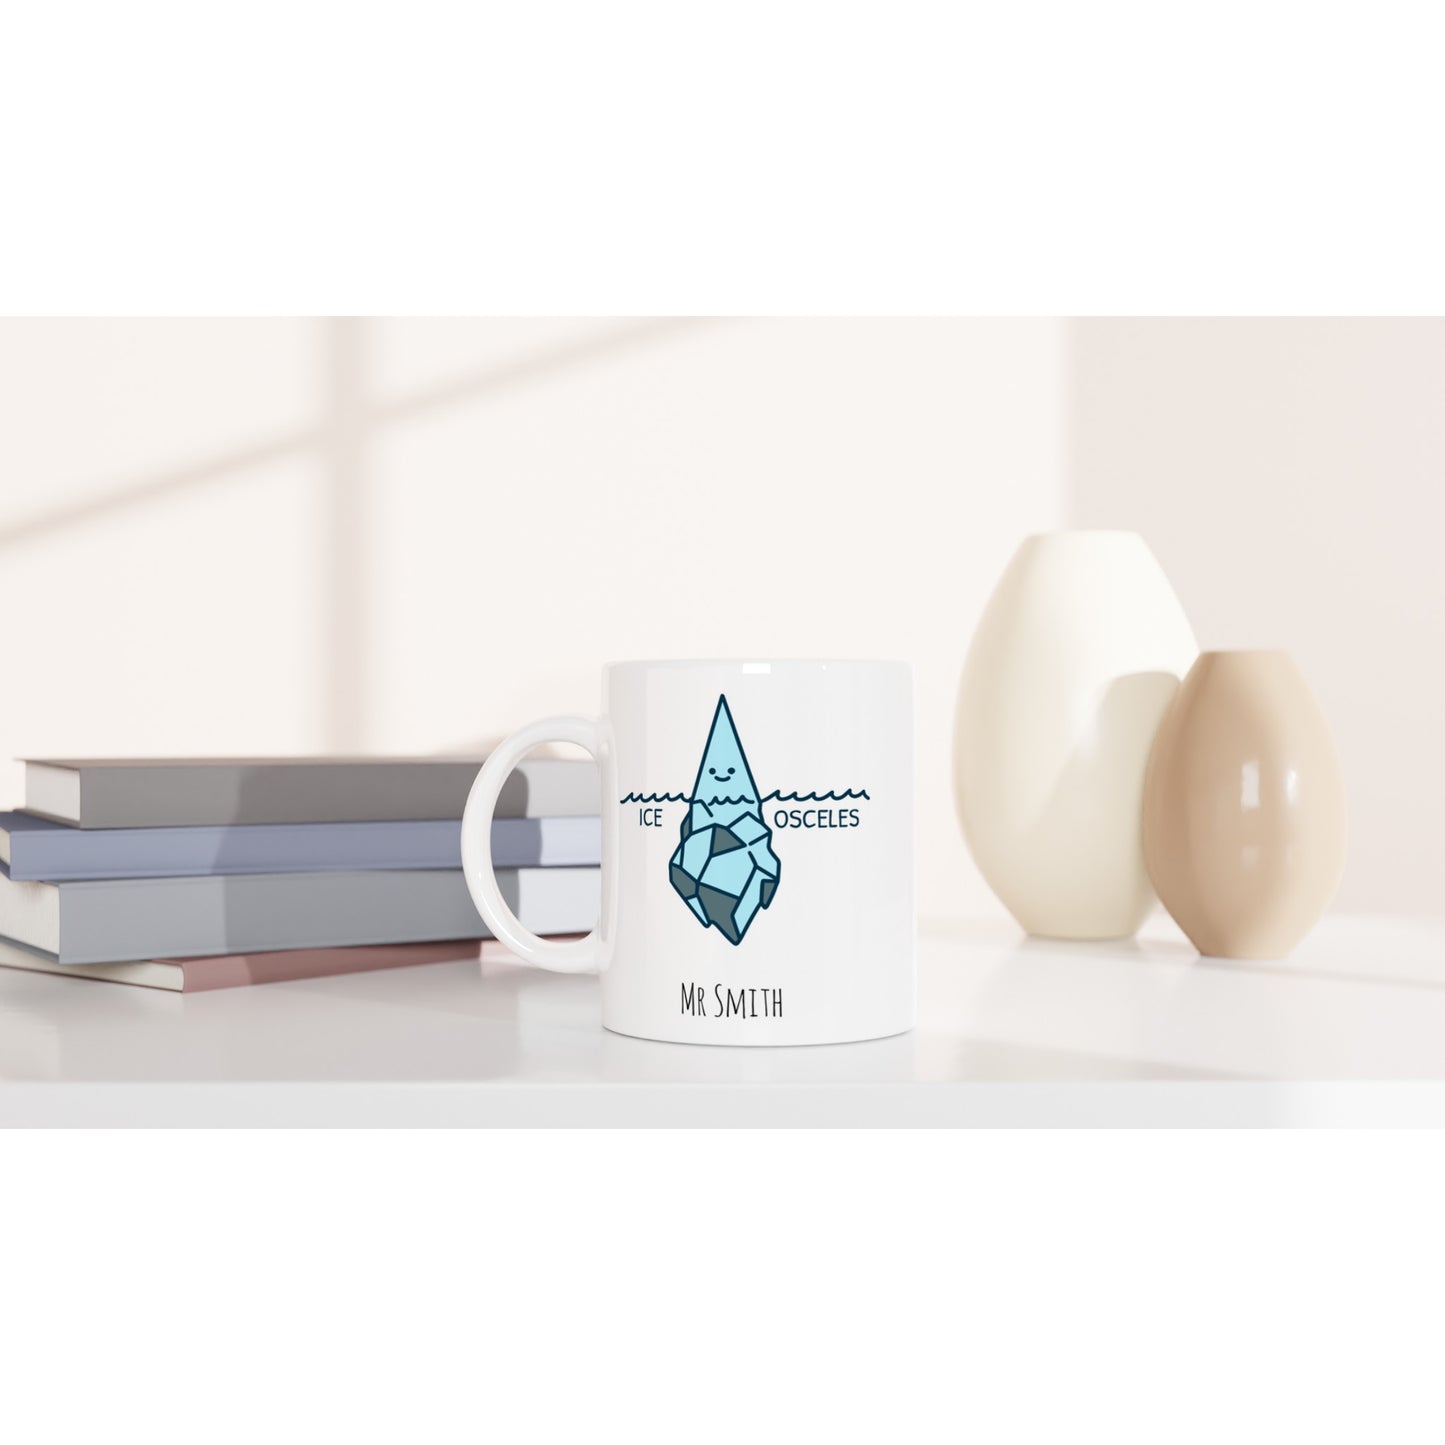 Personalise - Ice-Osceles - White 11oz Ceramic Mug Personalised Mug customise Maths personalise Science